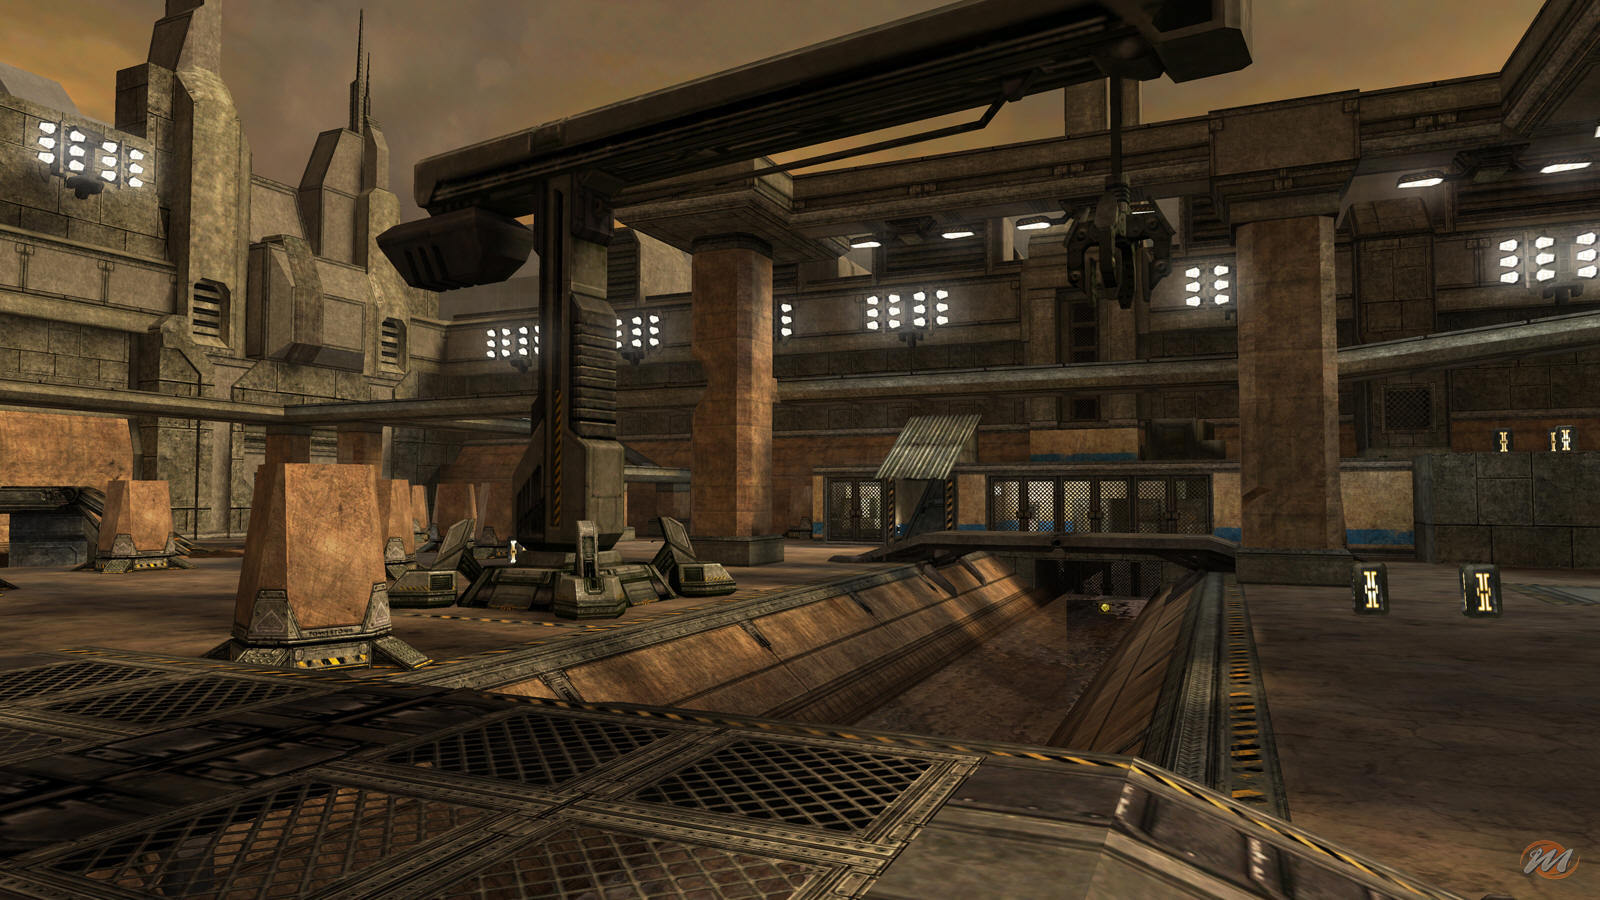 Halo 2 ritorna: i fan creano Progetto Insignia, un sostituto di Xbox Live per giocare online